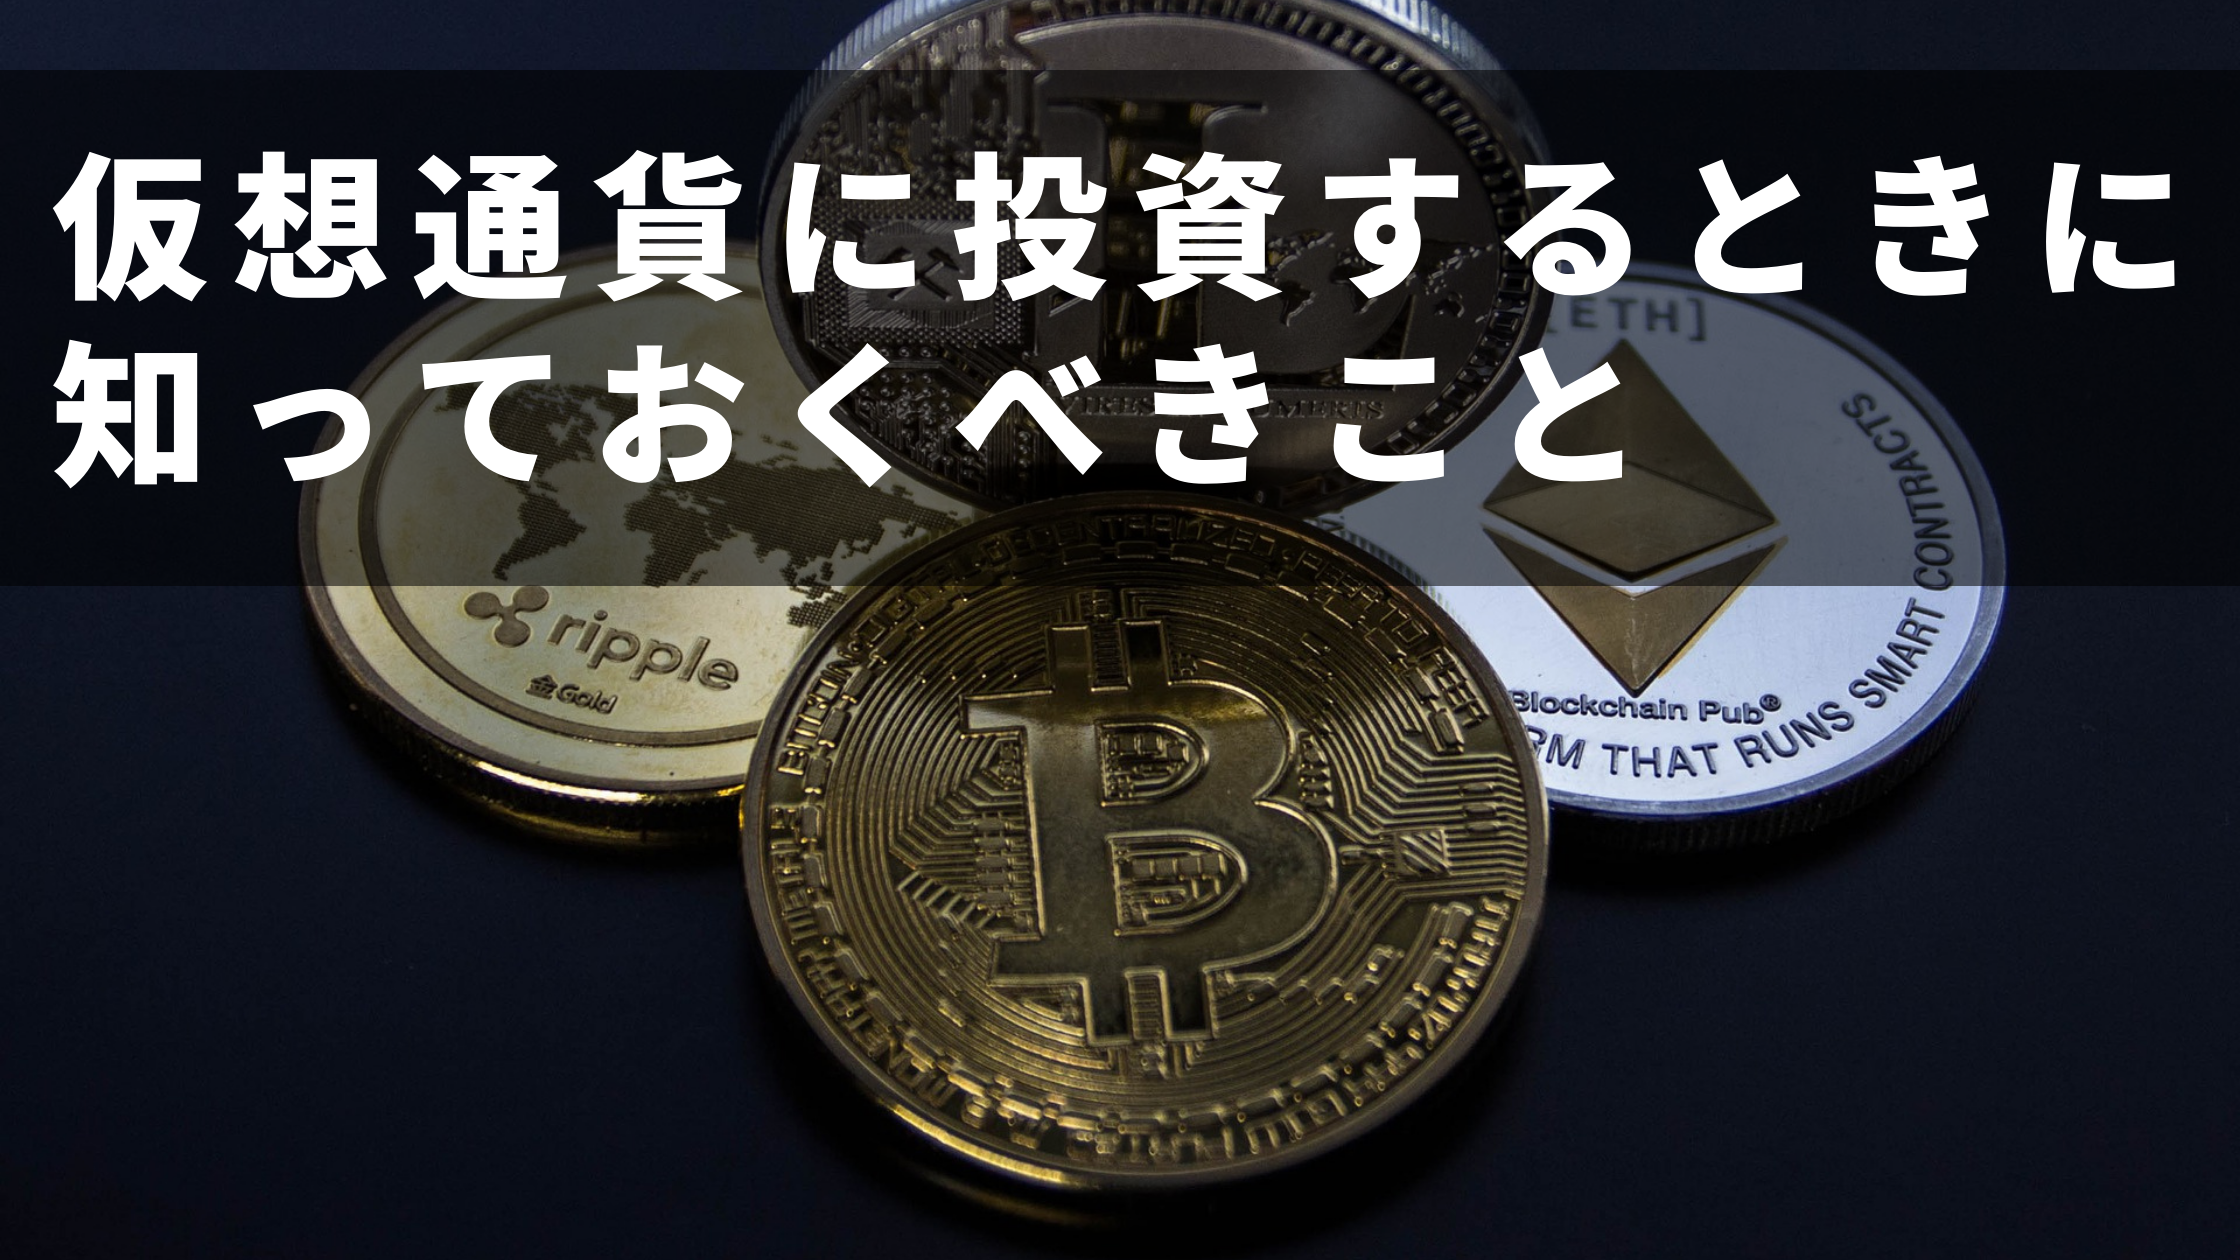 黒い背景にビットコインやリップルなどの仮想通貨が置かれている写真